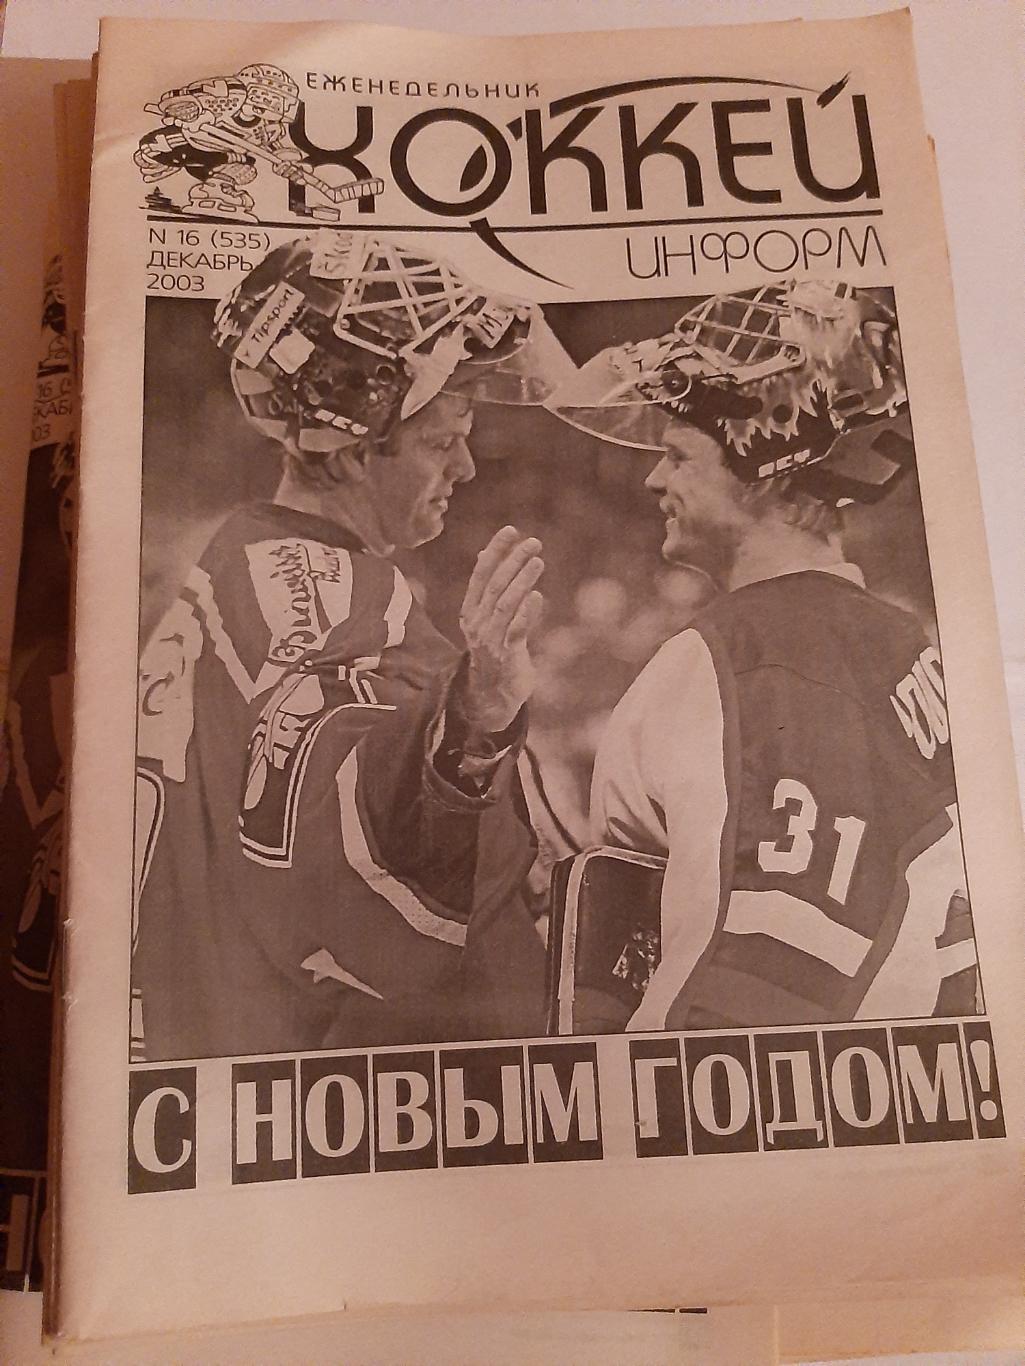 Еженедельник Хоккей информ 2003 №1 - 16 вторая половина